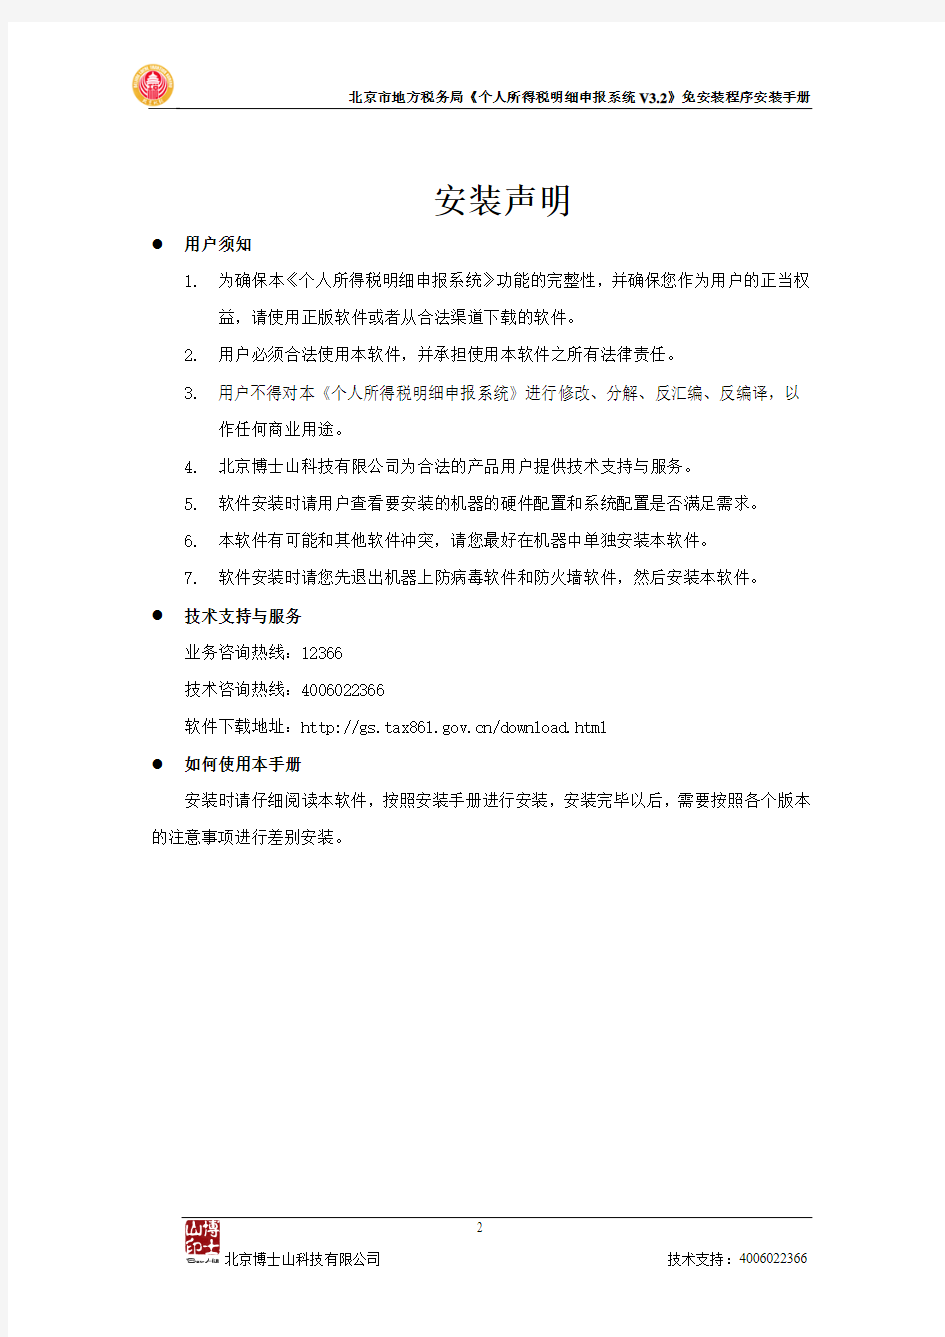 北京市地方税务局个人所得税明细申报系统V30